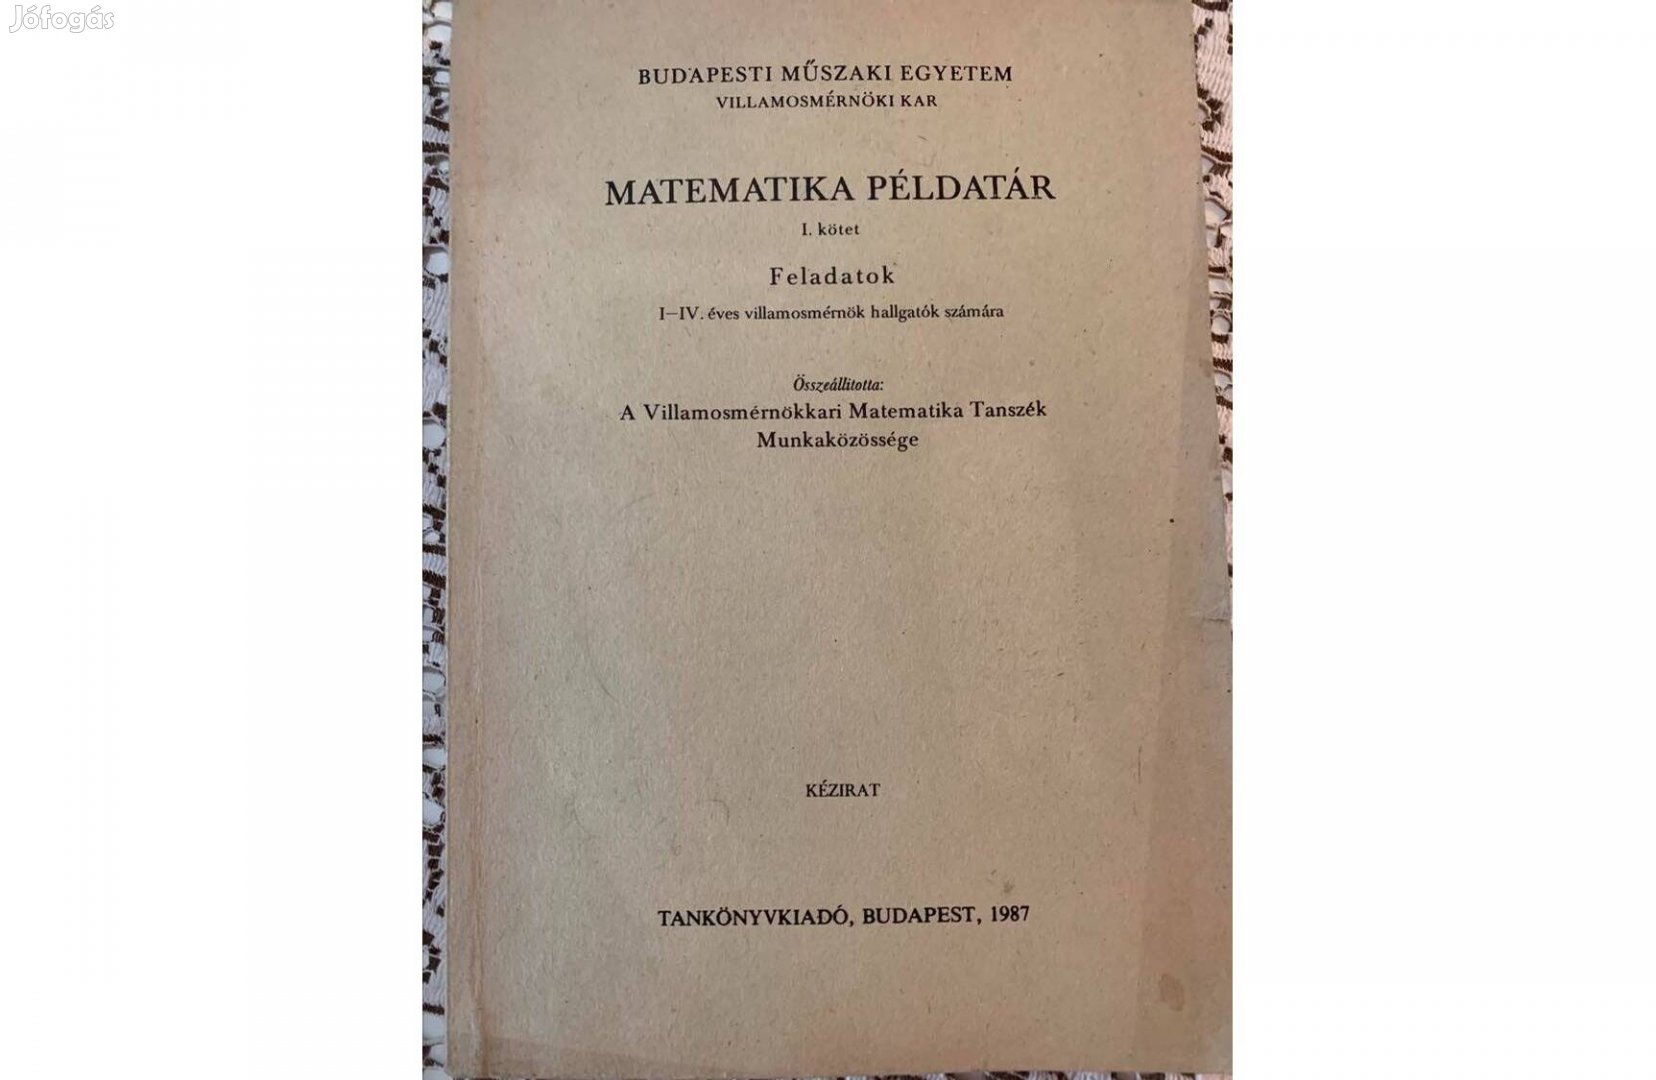 BME-Matematika Példatár I.rész, I-IV. éves villamosmérnök hallgatóknak